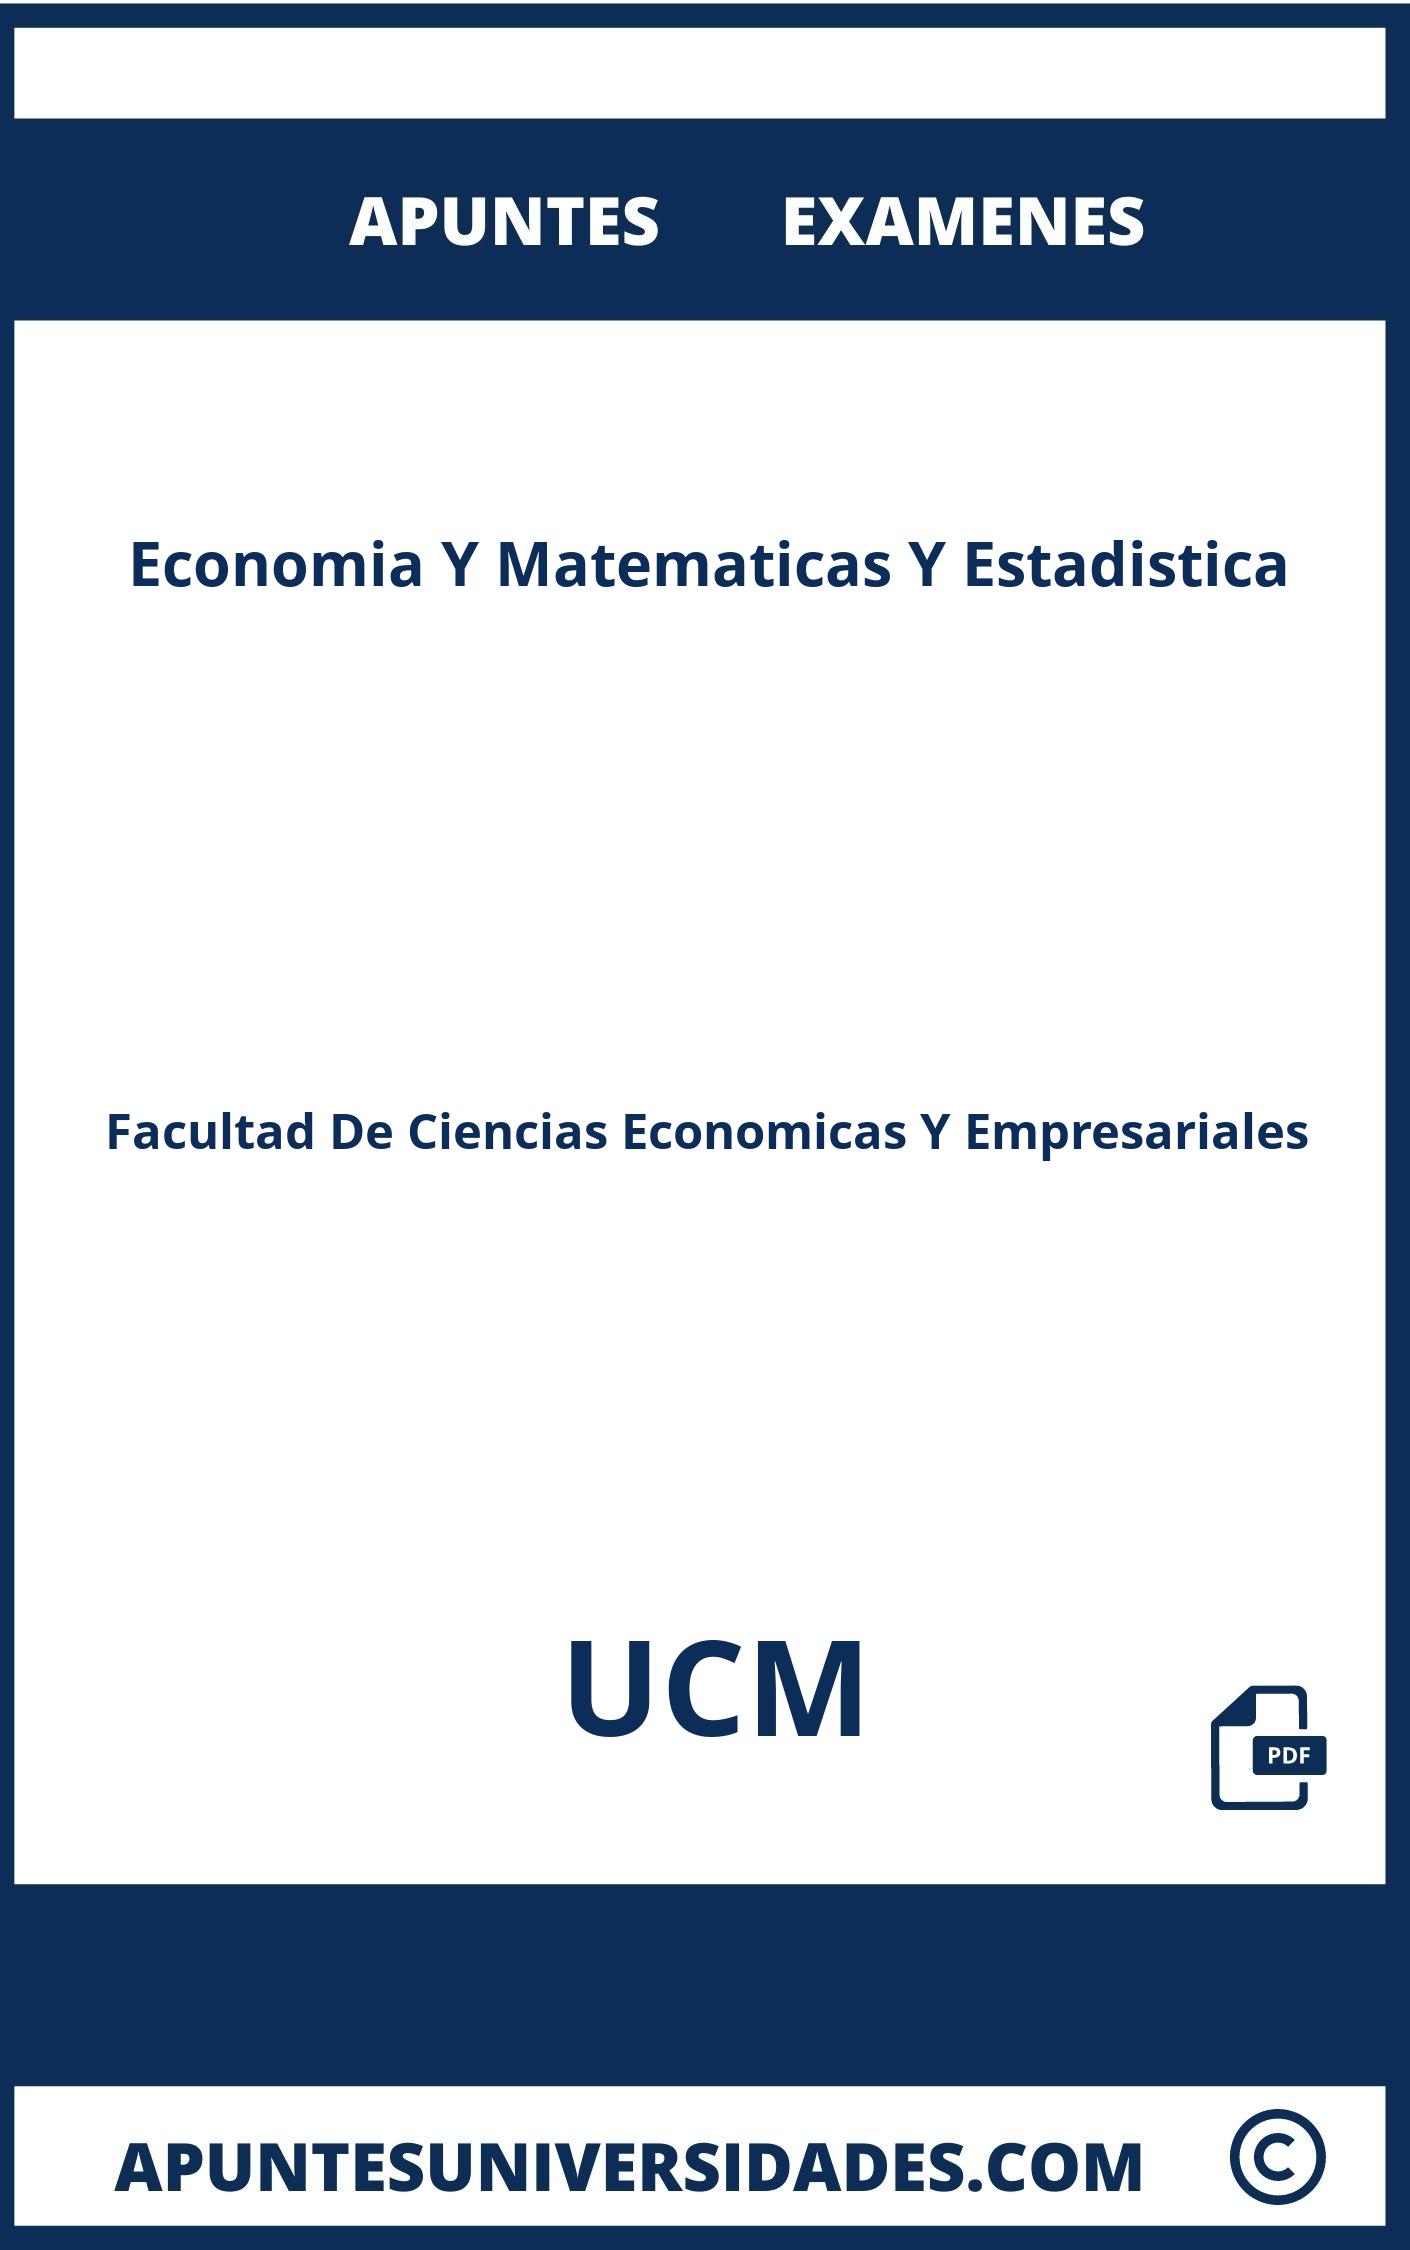 Examenes y Apuntes Economia Y Matematicas Y Estadistica UCM